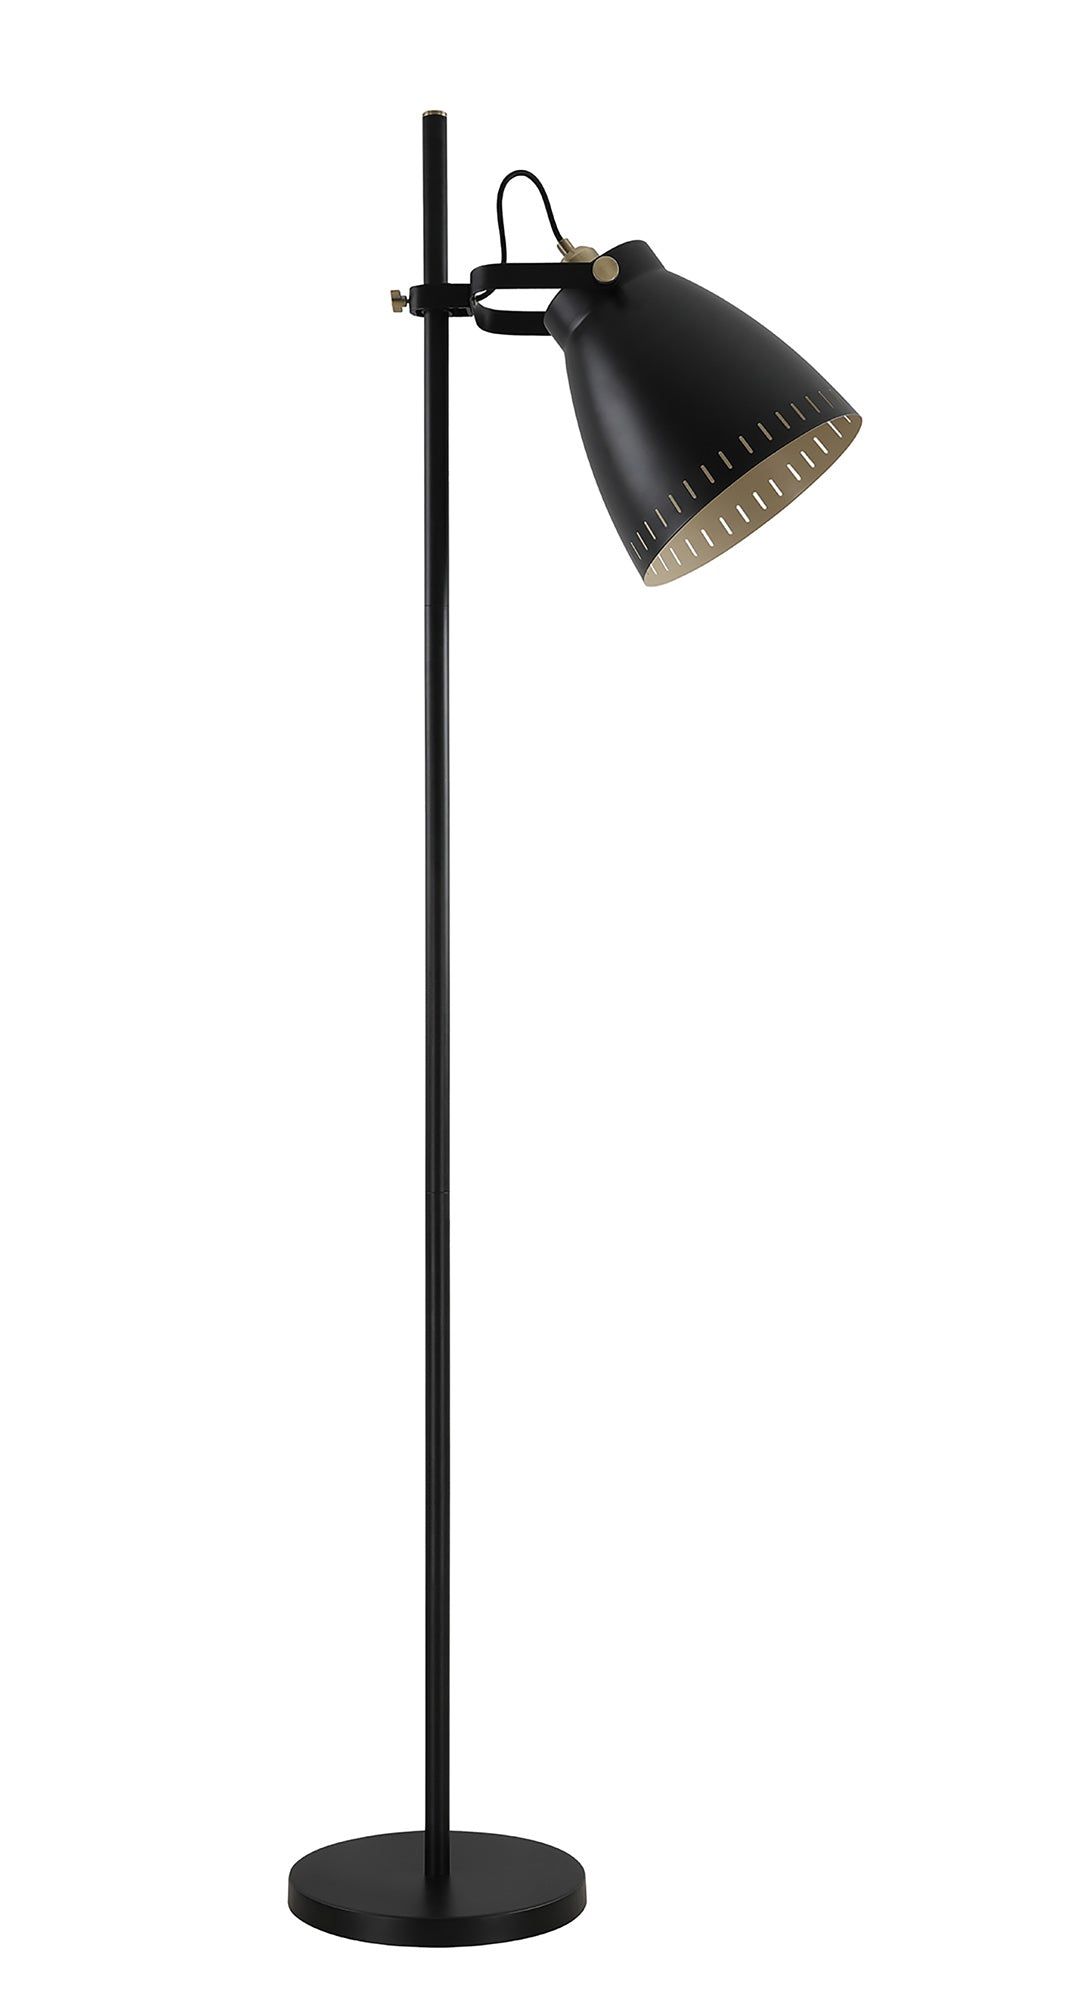 Stoke Adjustable Floor Lamp, 1 x E27, Matt Black/Antique Brass/Khaki